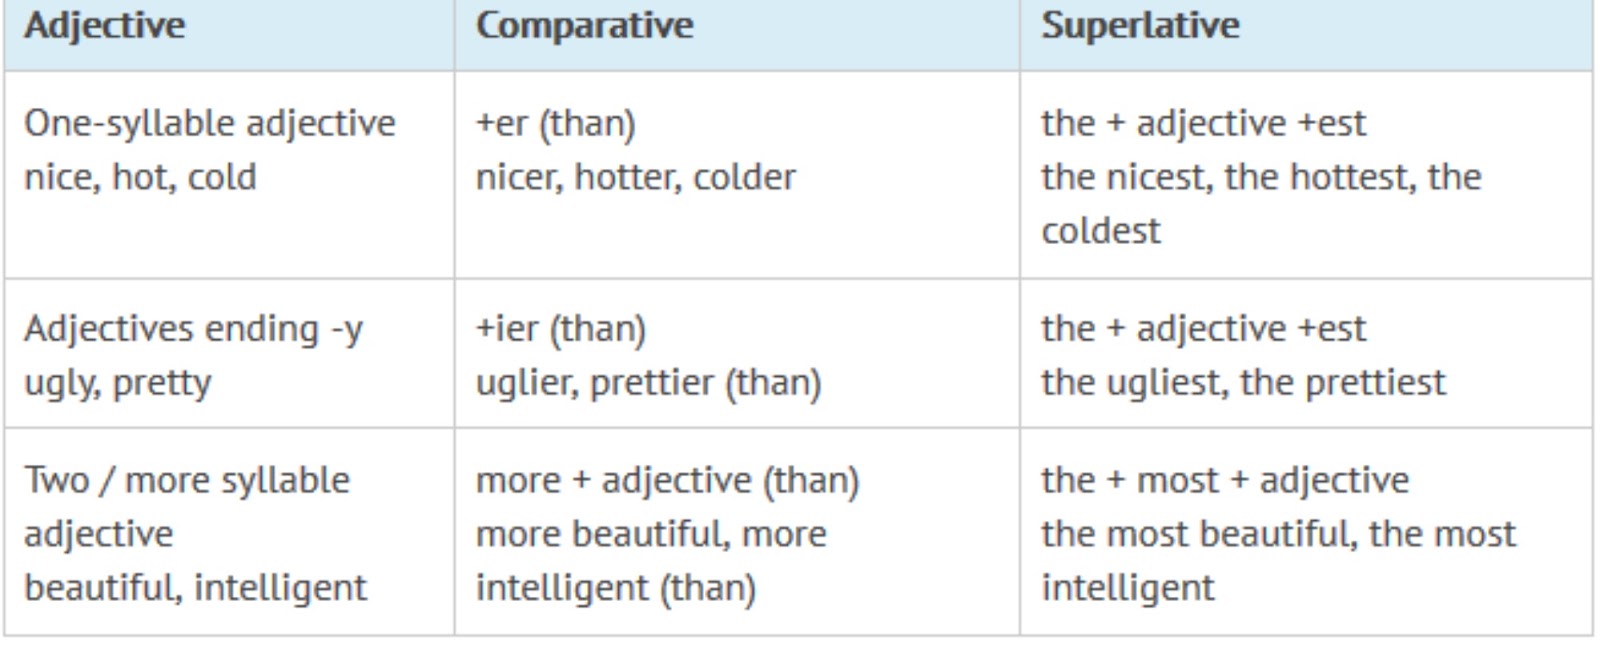 Adjective cold superlative. Comparatives and Superlatives. Comparative and Superlative adjectives исключения. Грамматика Comparatives. Comparatives and Superlatives исключения.